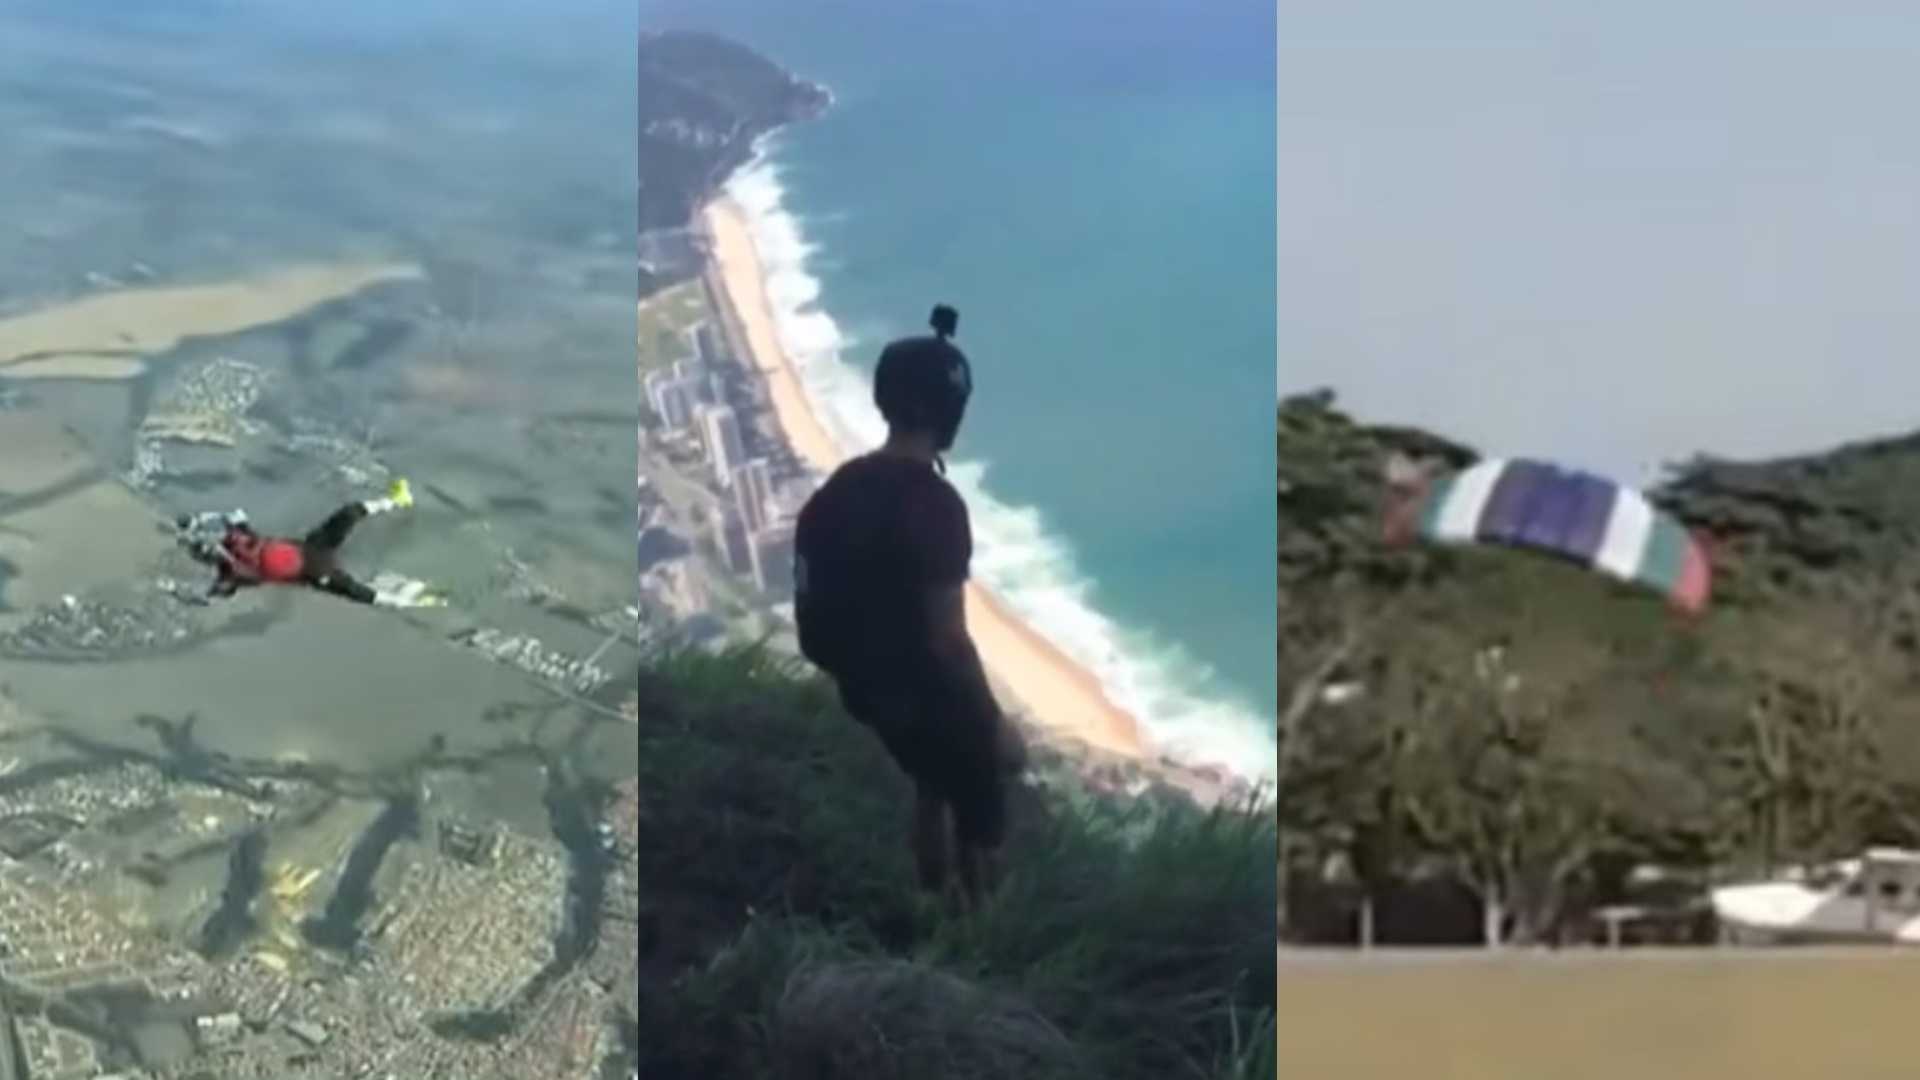 Paraquedista morre após falha durante salto em Bangu - Super Rádio Tupi